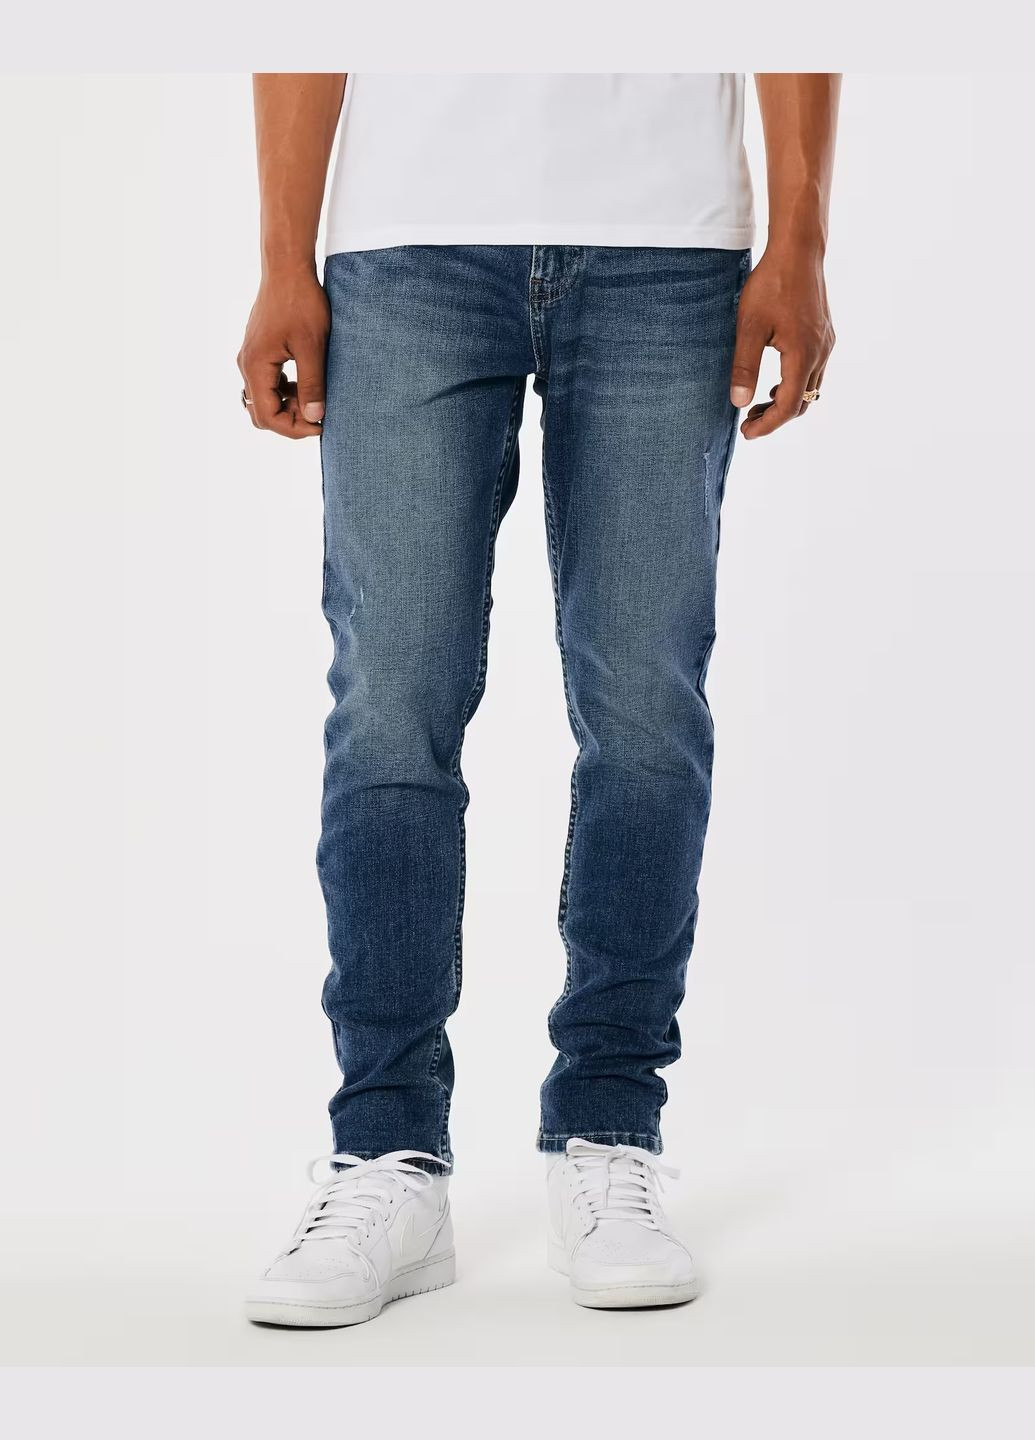 Синие демисезонные джинсы athletic skinny hc9660m Hollister